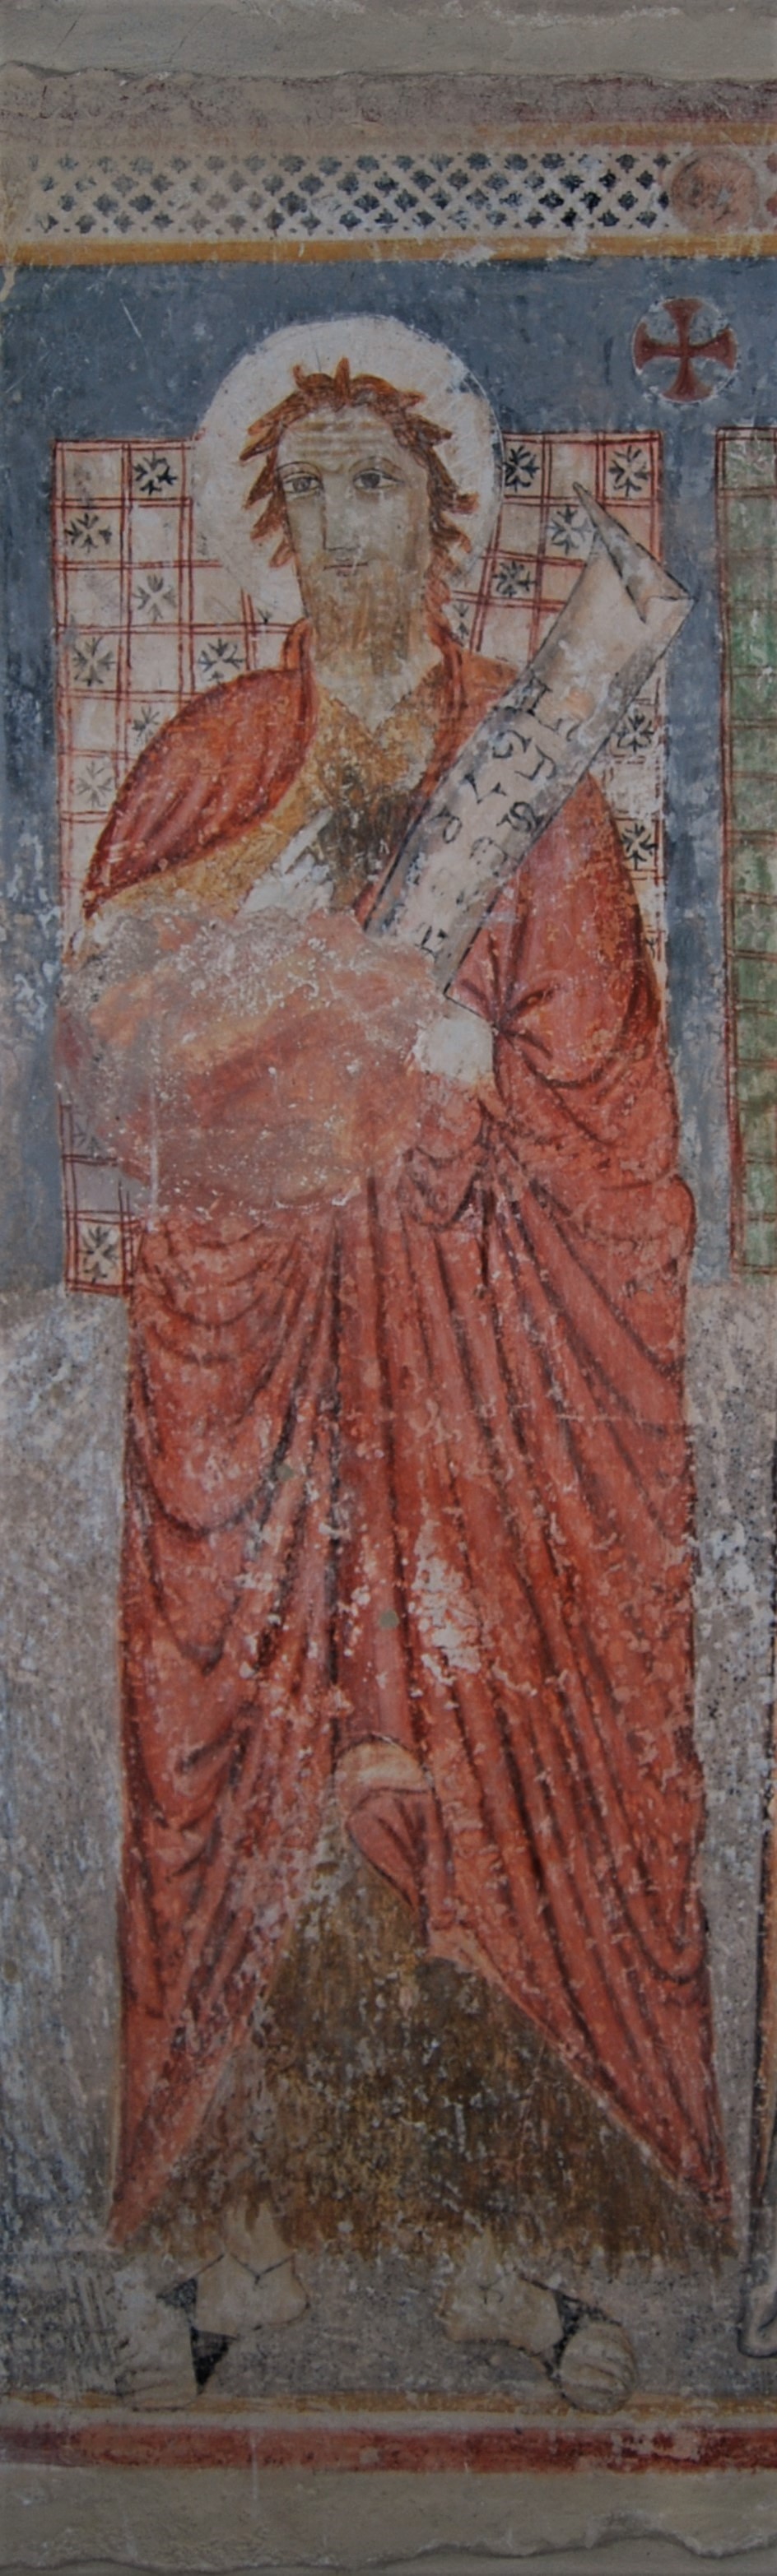 S. Giovanni Battista, S. Giovanni Battista (dipinto, complesso decorativo) - ambito abruzzese (inizio XV)